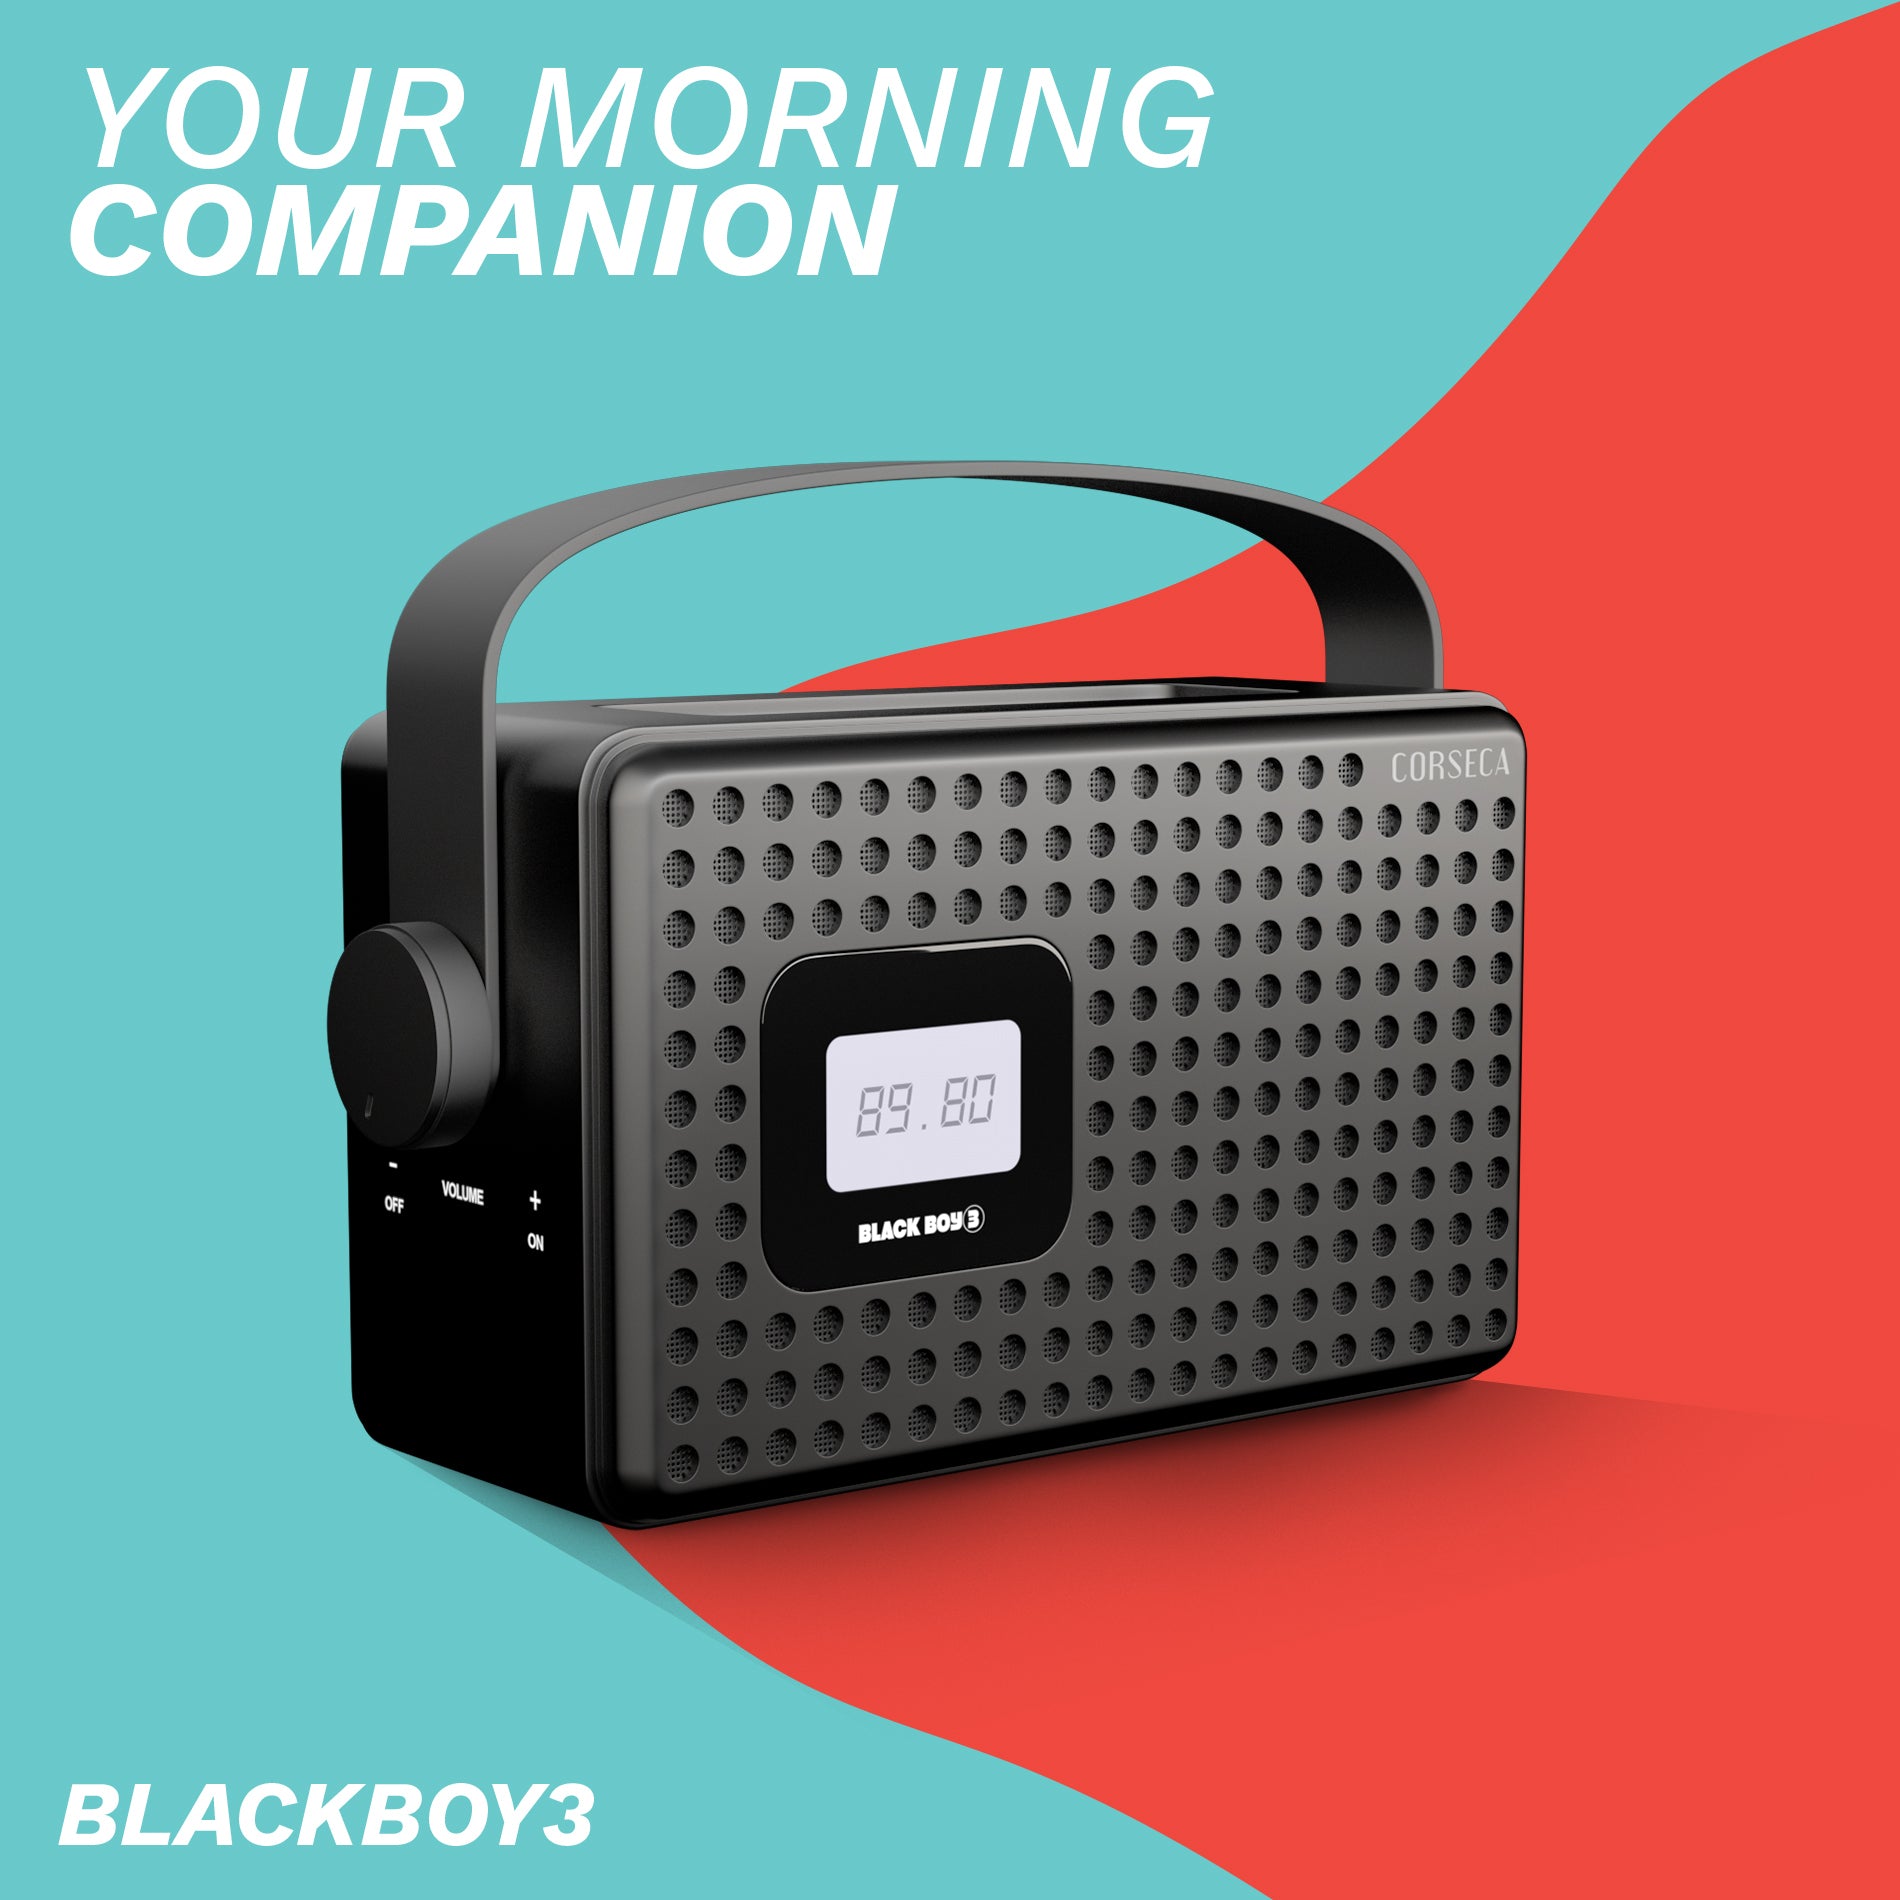 Buy Blackboy3 Speaker - CORSECA